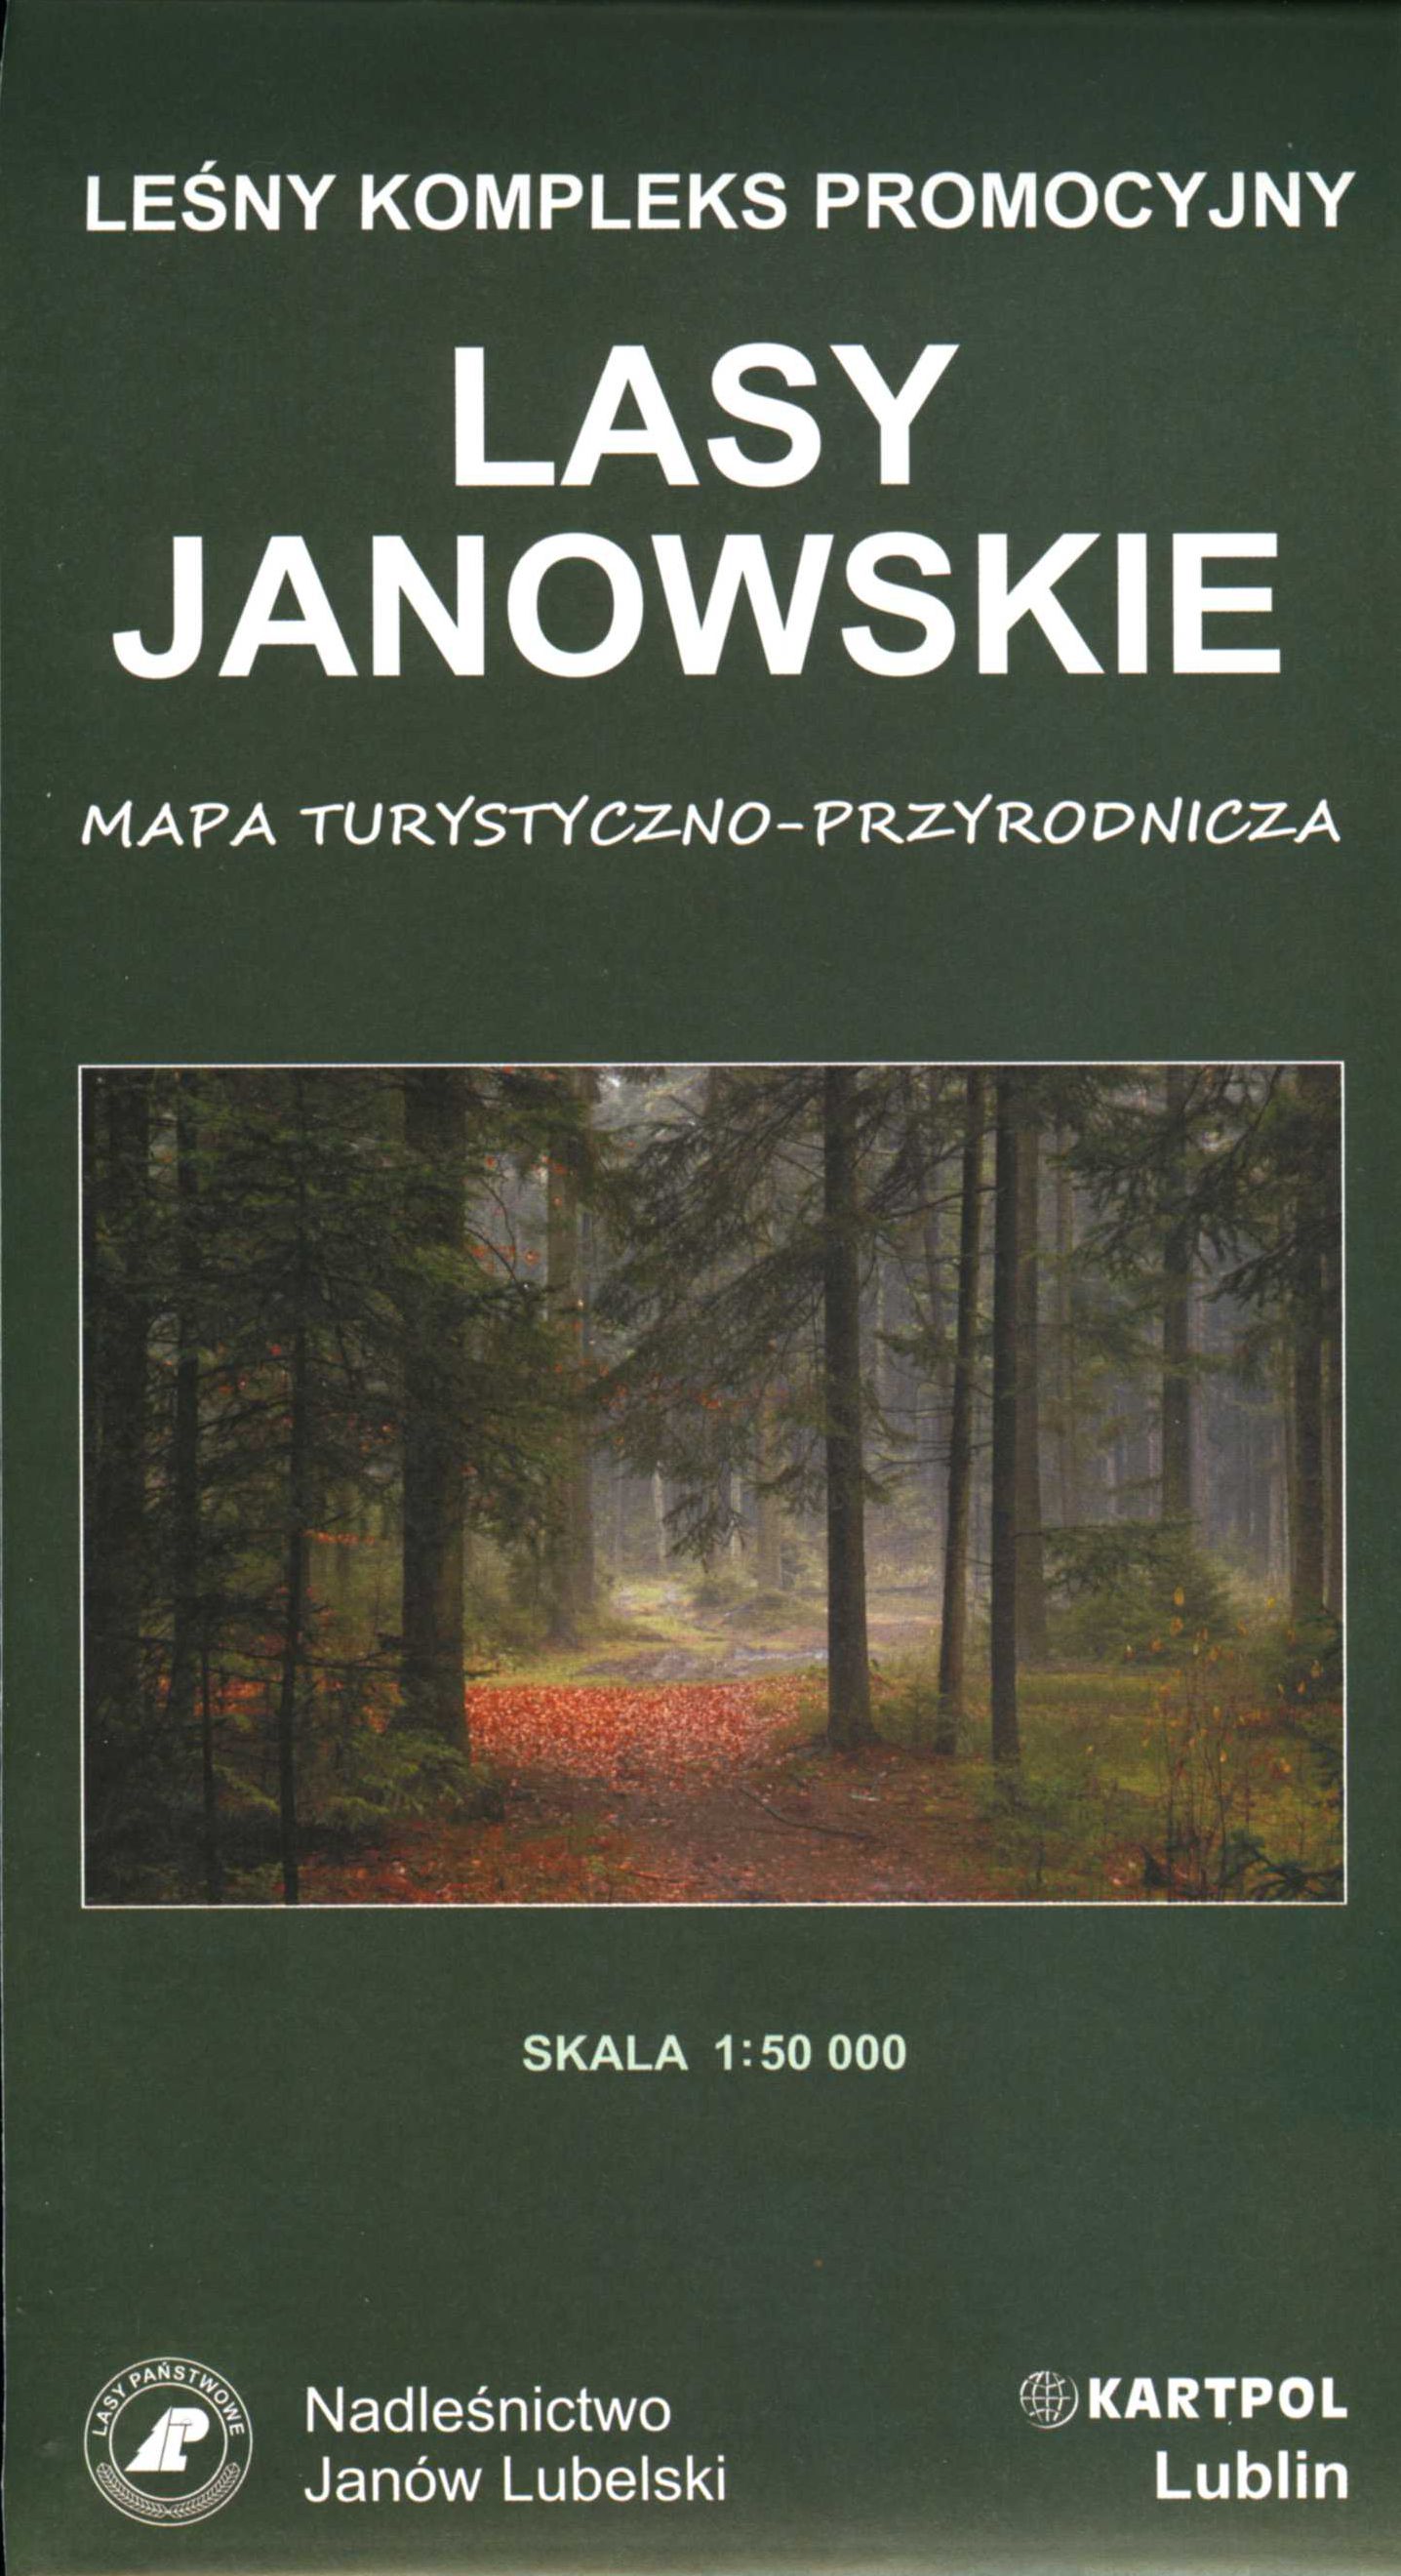 Lasy Janowskie. Leśny Kompleks Promocyjny